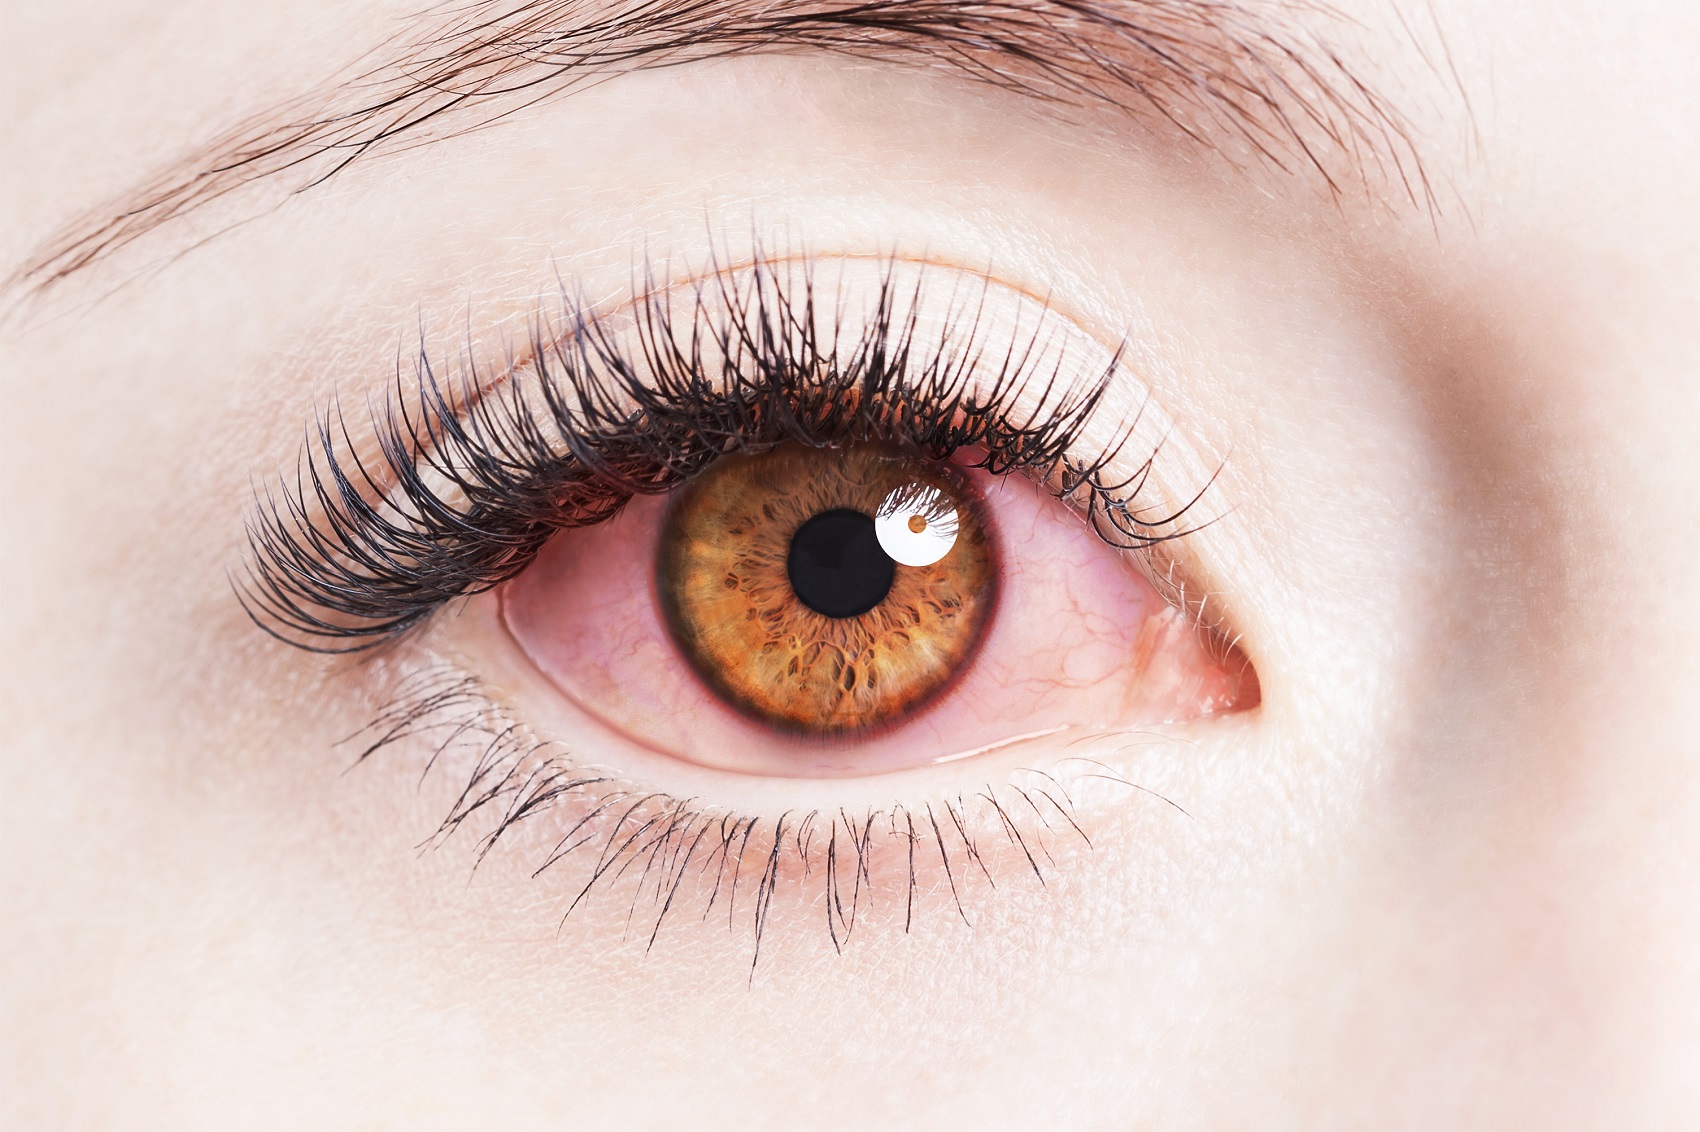 Alergia oczu – na co możemy mieć alergię?